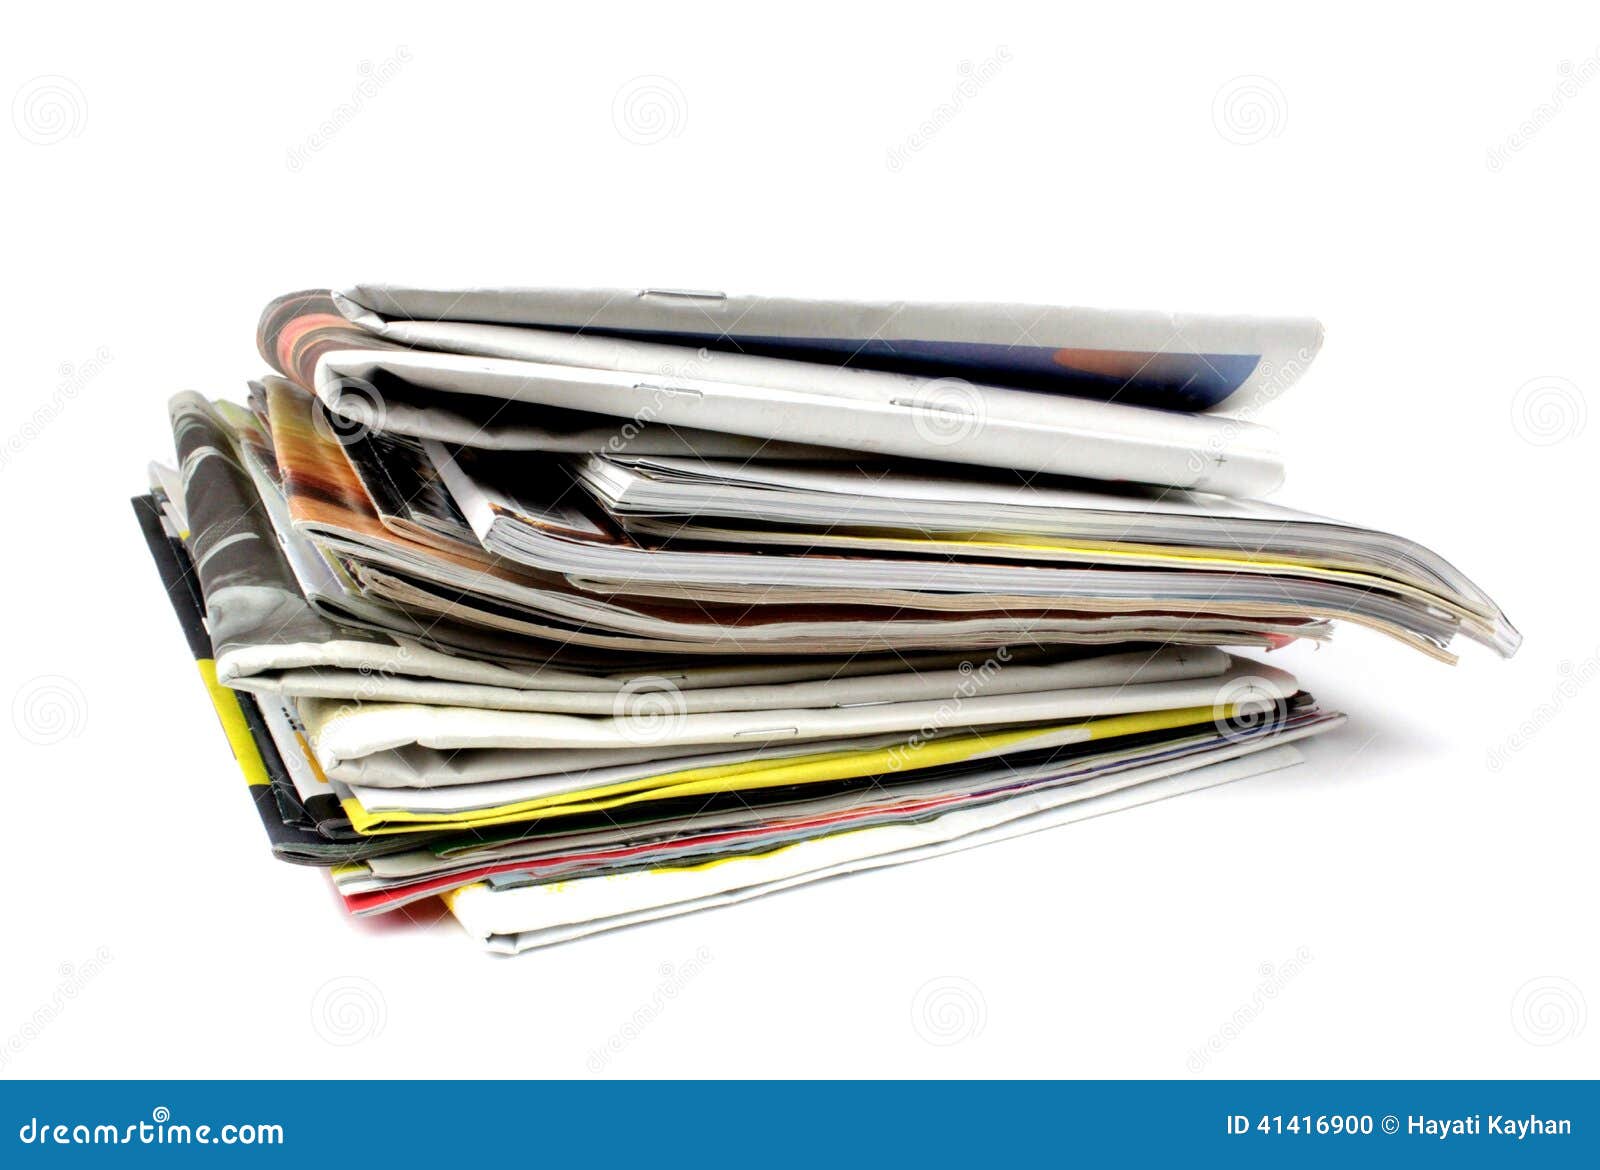 Kwaadaardig Ongeldig Roest Stapel Van Kranten En Tijdschriften Stock Foto - Image of tijdschriften,  sluit: 41416900